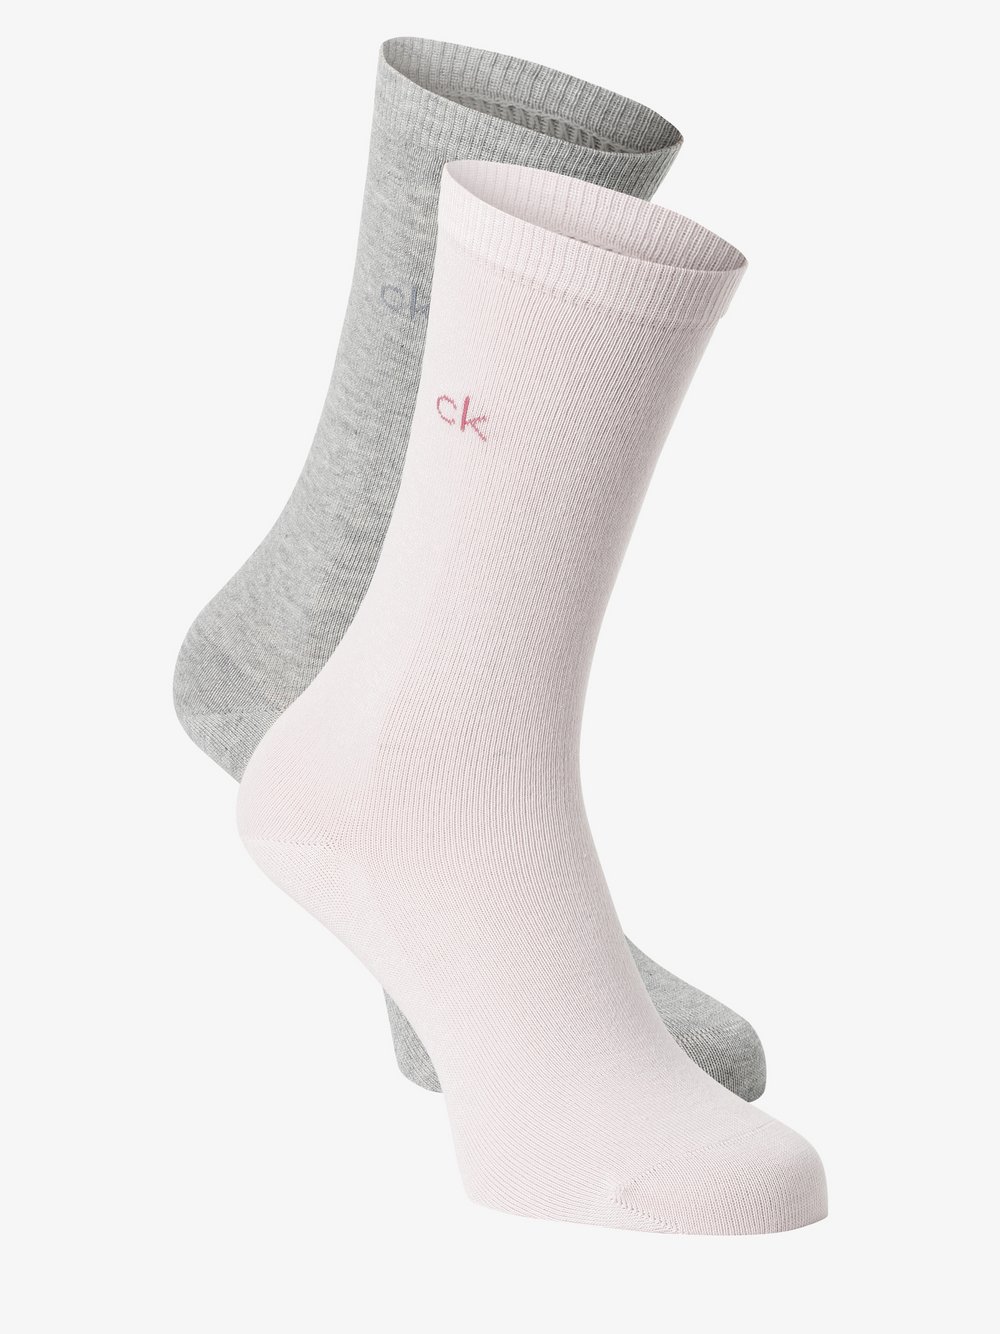 Calvin Klein - Skarpety damskie pakowane po 2 szt., różowy